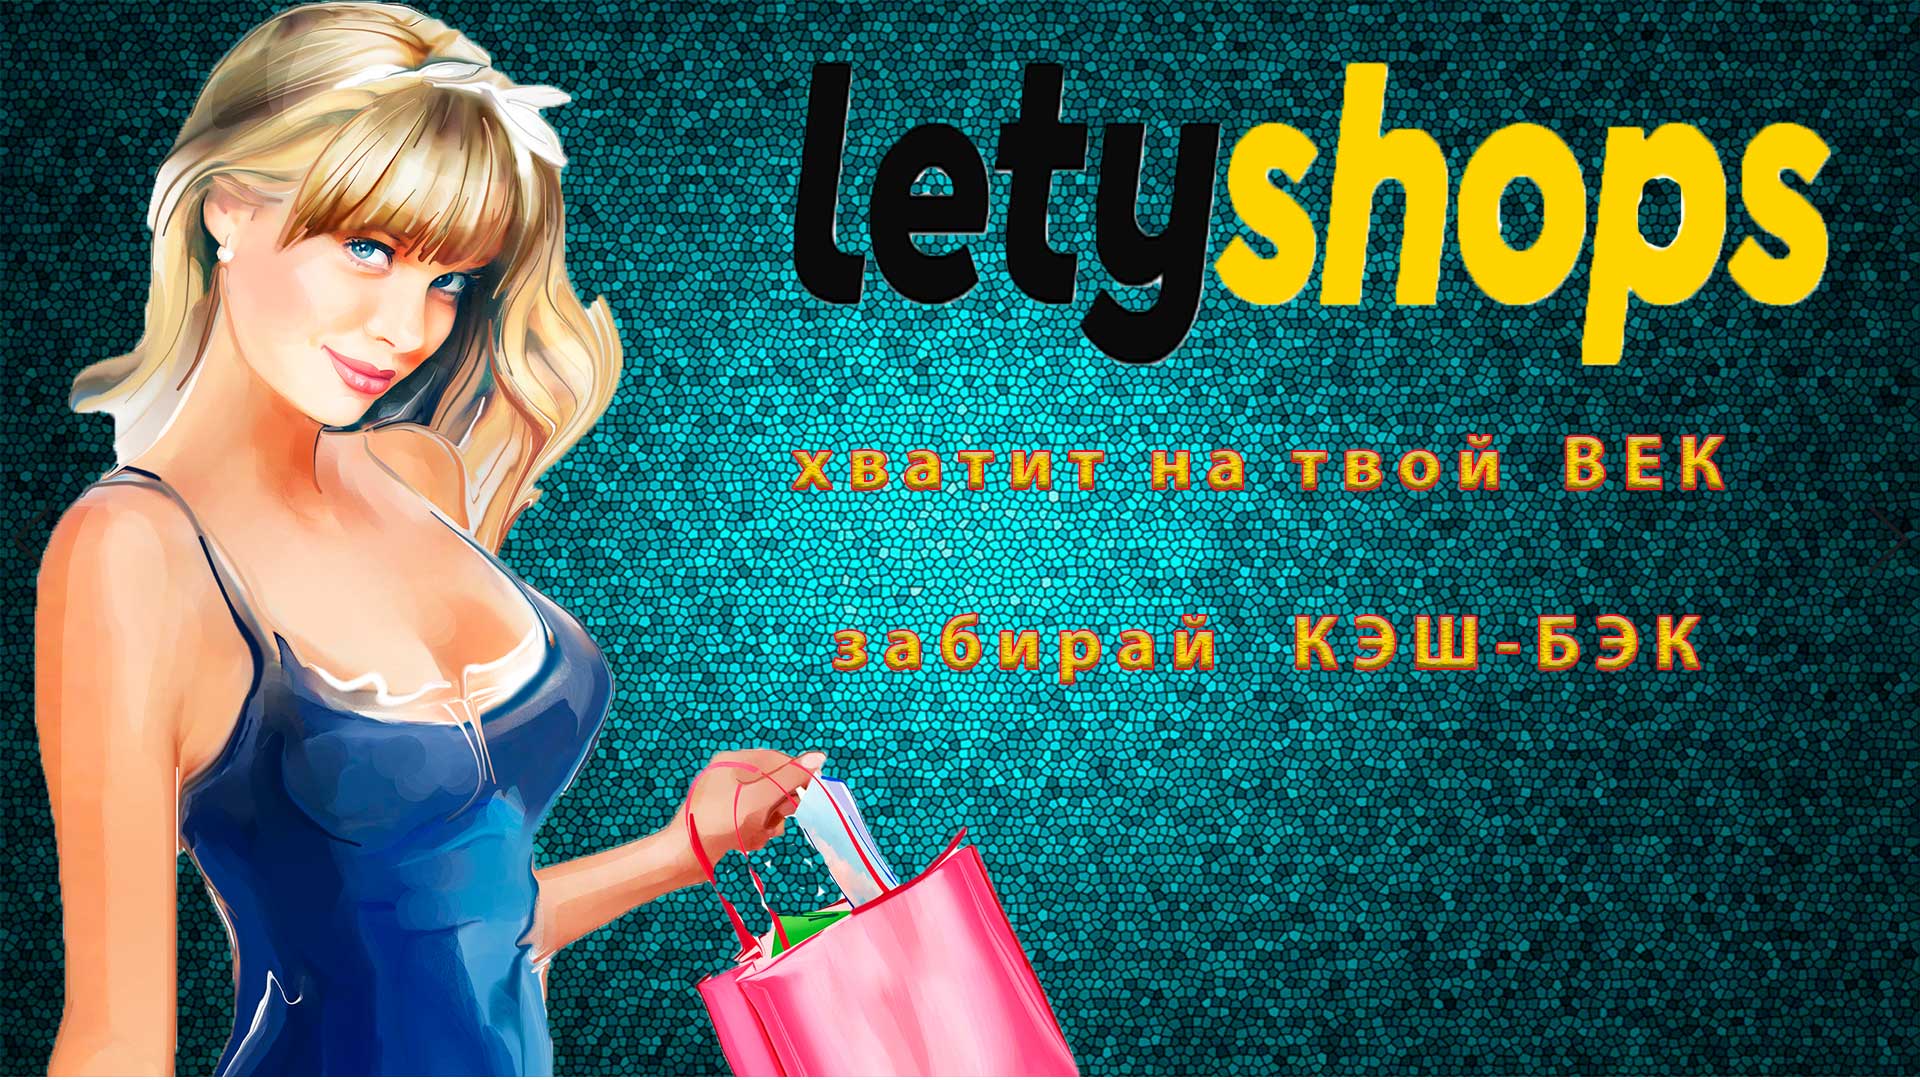 Летишопс (Lety shops) зарегистрируйся, и получай до 15 процентов от покупок обратно